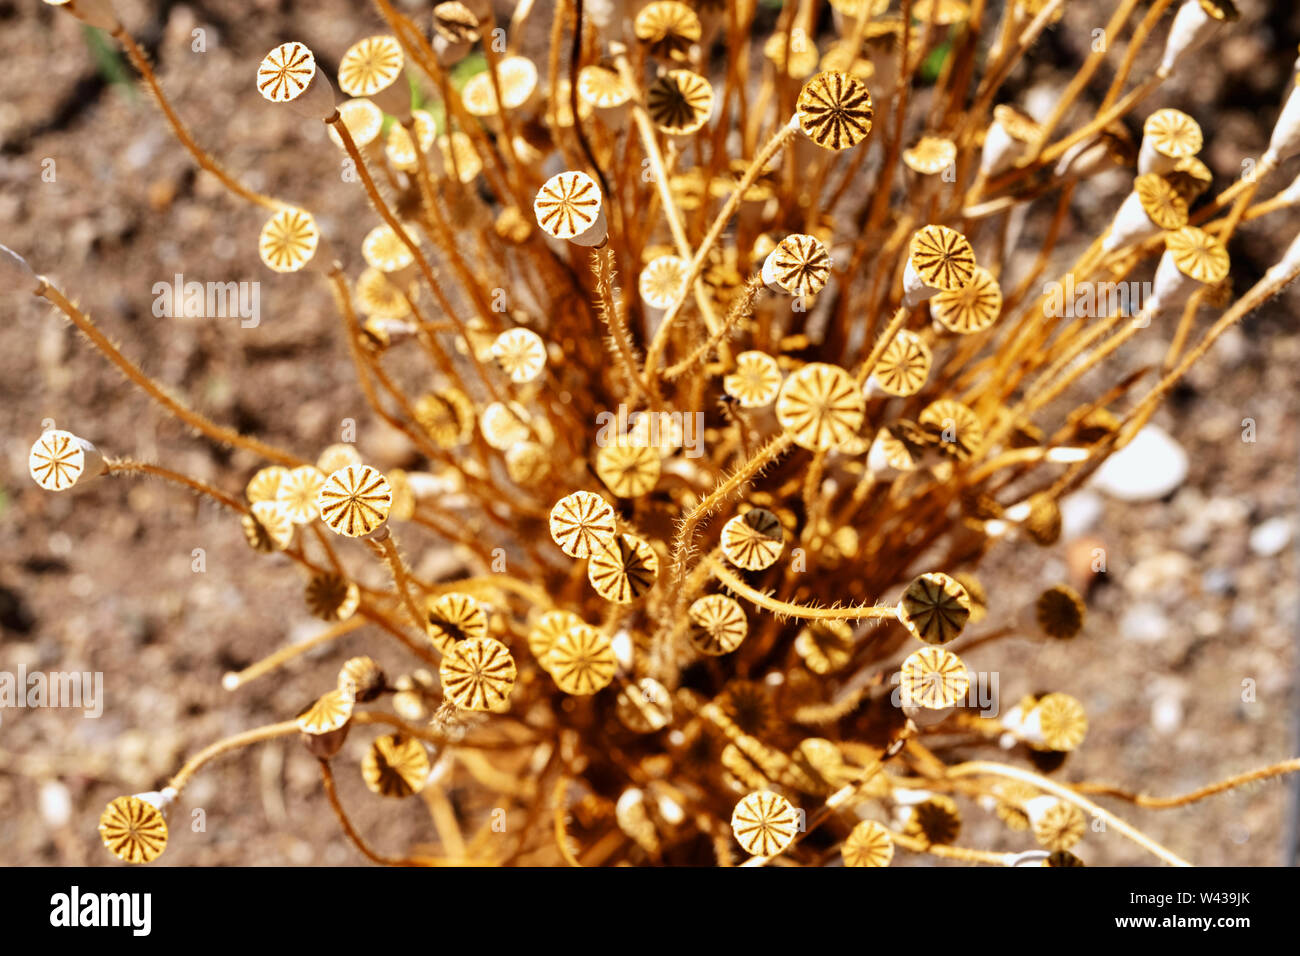 Hermosa cápsulas de adormidera Papaver rhoeas común -o amapola - maíz seco, largos tallos con semillas macetas con estigma Foto de stock